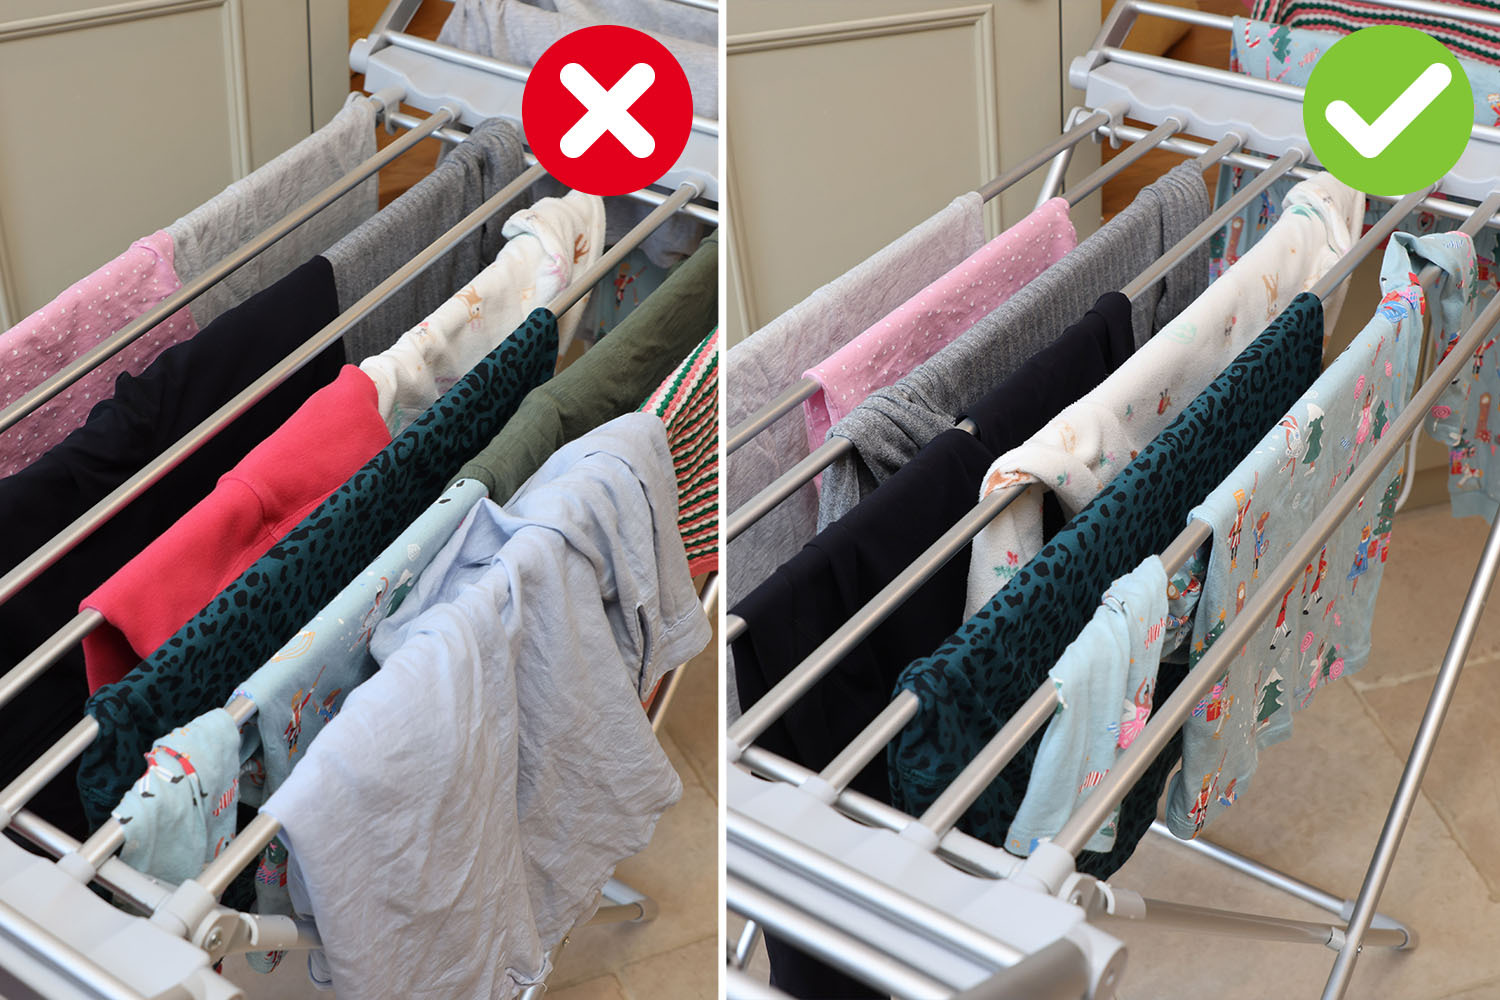 Überlappende Kleidung ist keine effiziente Methode zum Trocknen Ihrer Kleidung